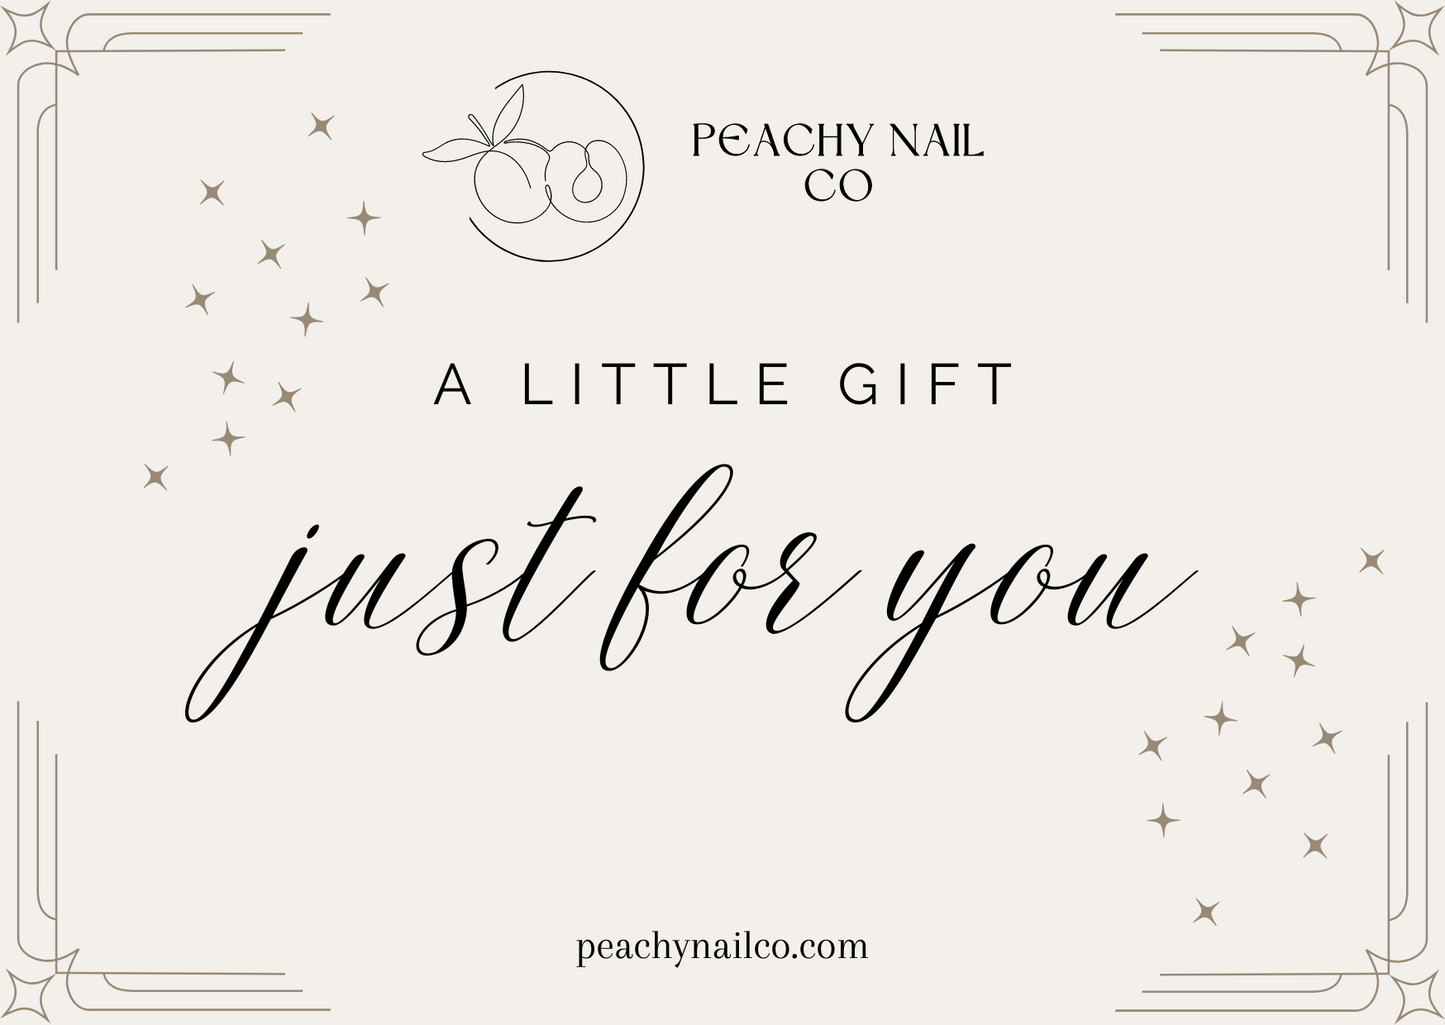 Peachy Nail Co Gift Card